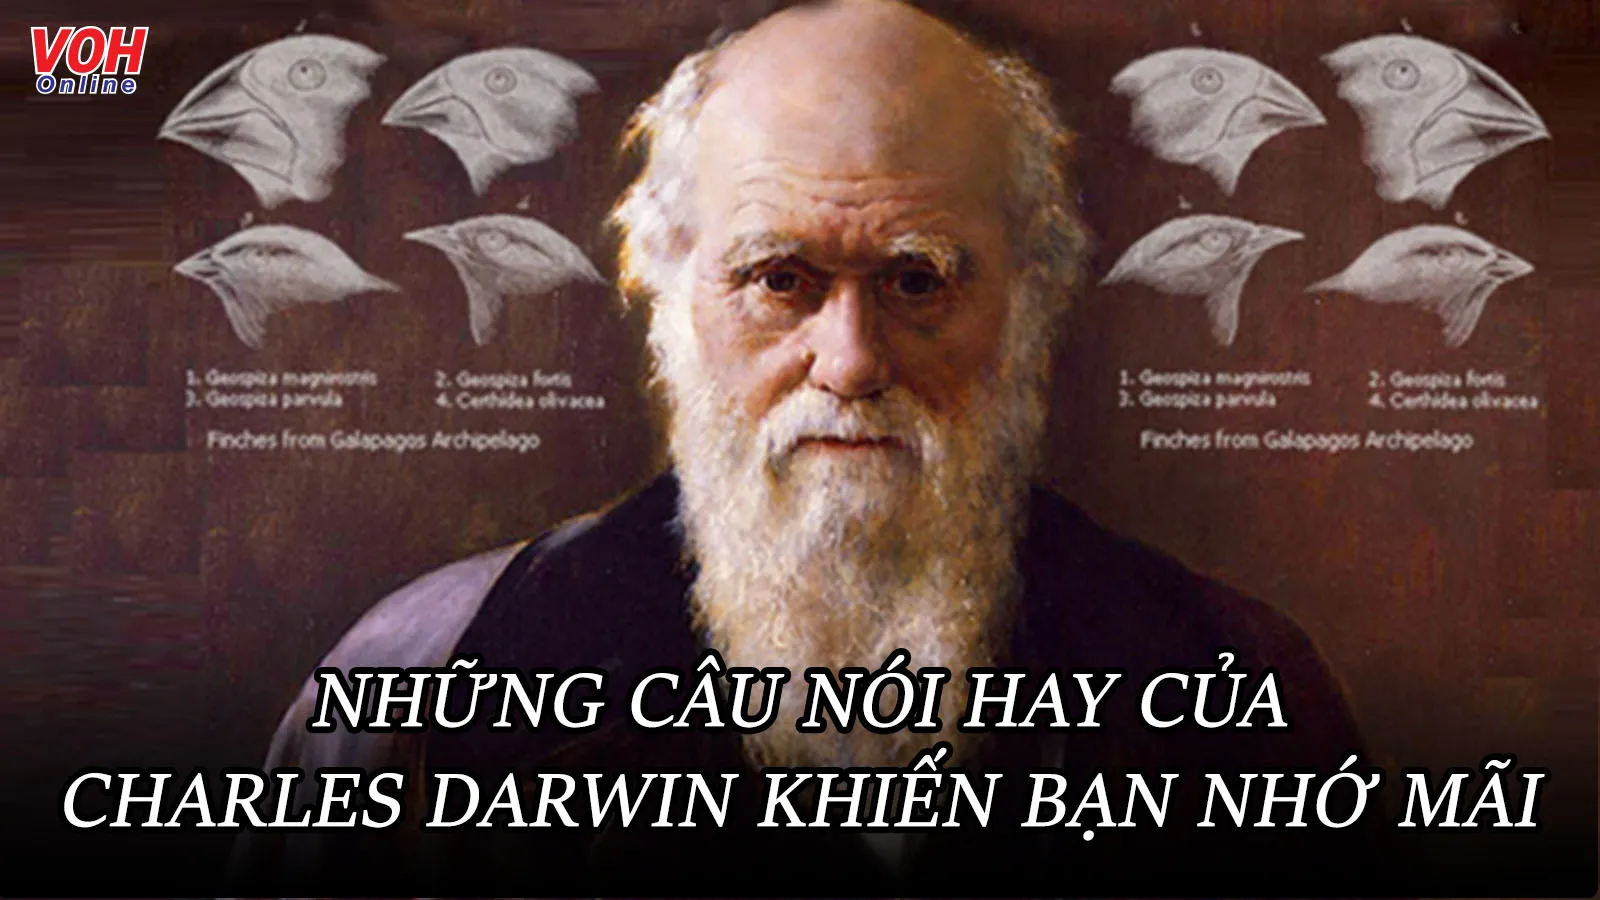 Charles Darwin là ai? 10 câu nói hay của nhà khoa học Charles Darwin